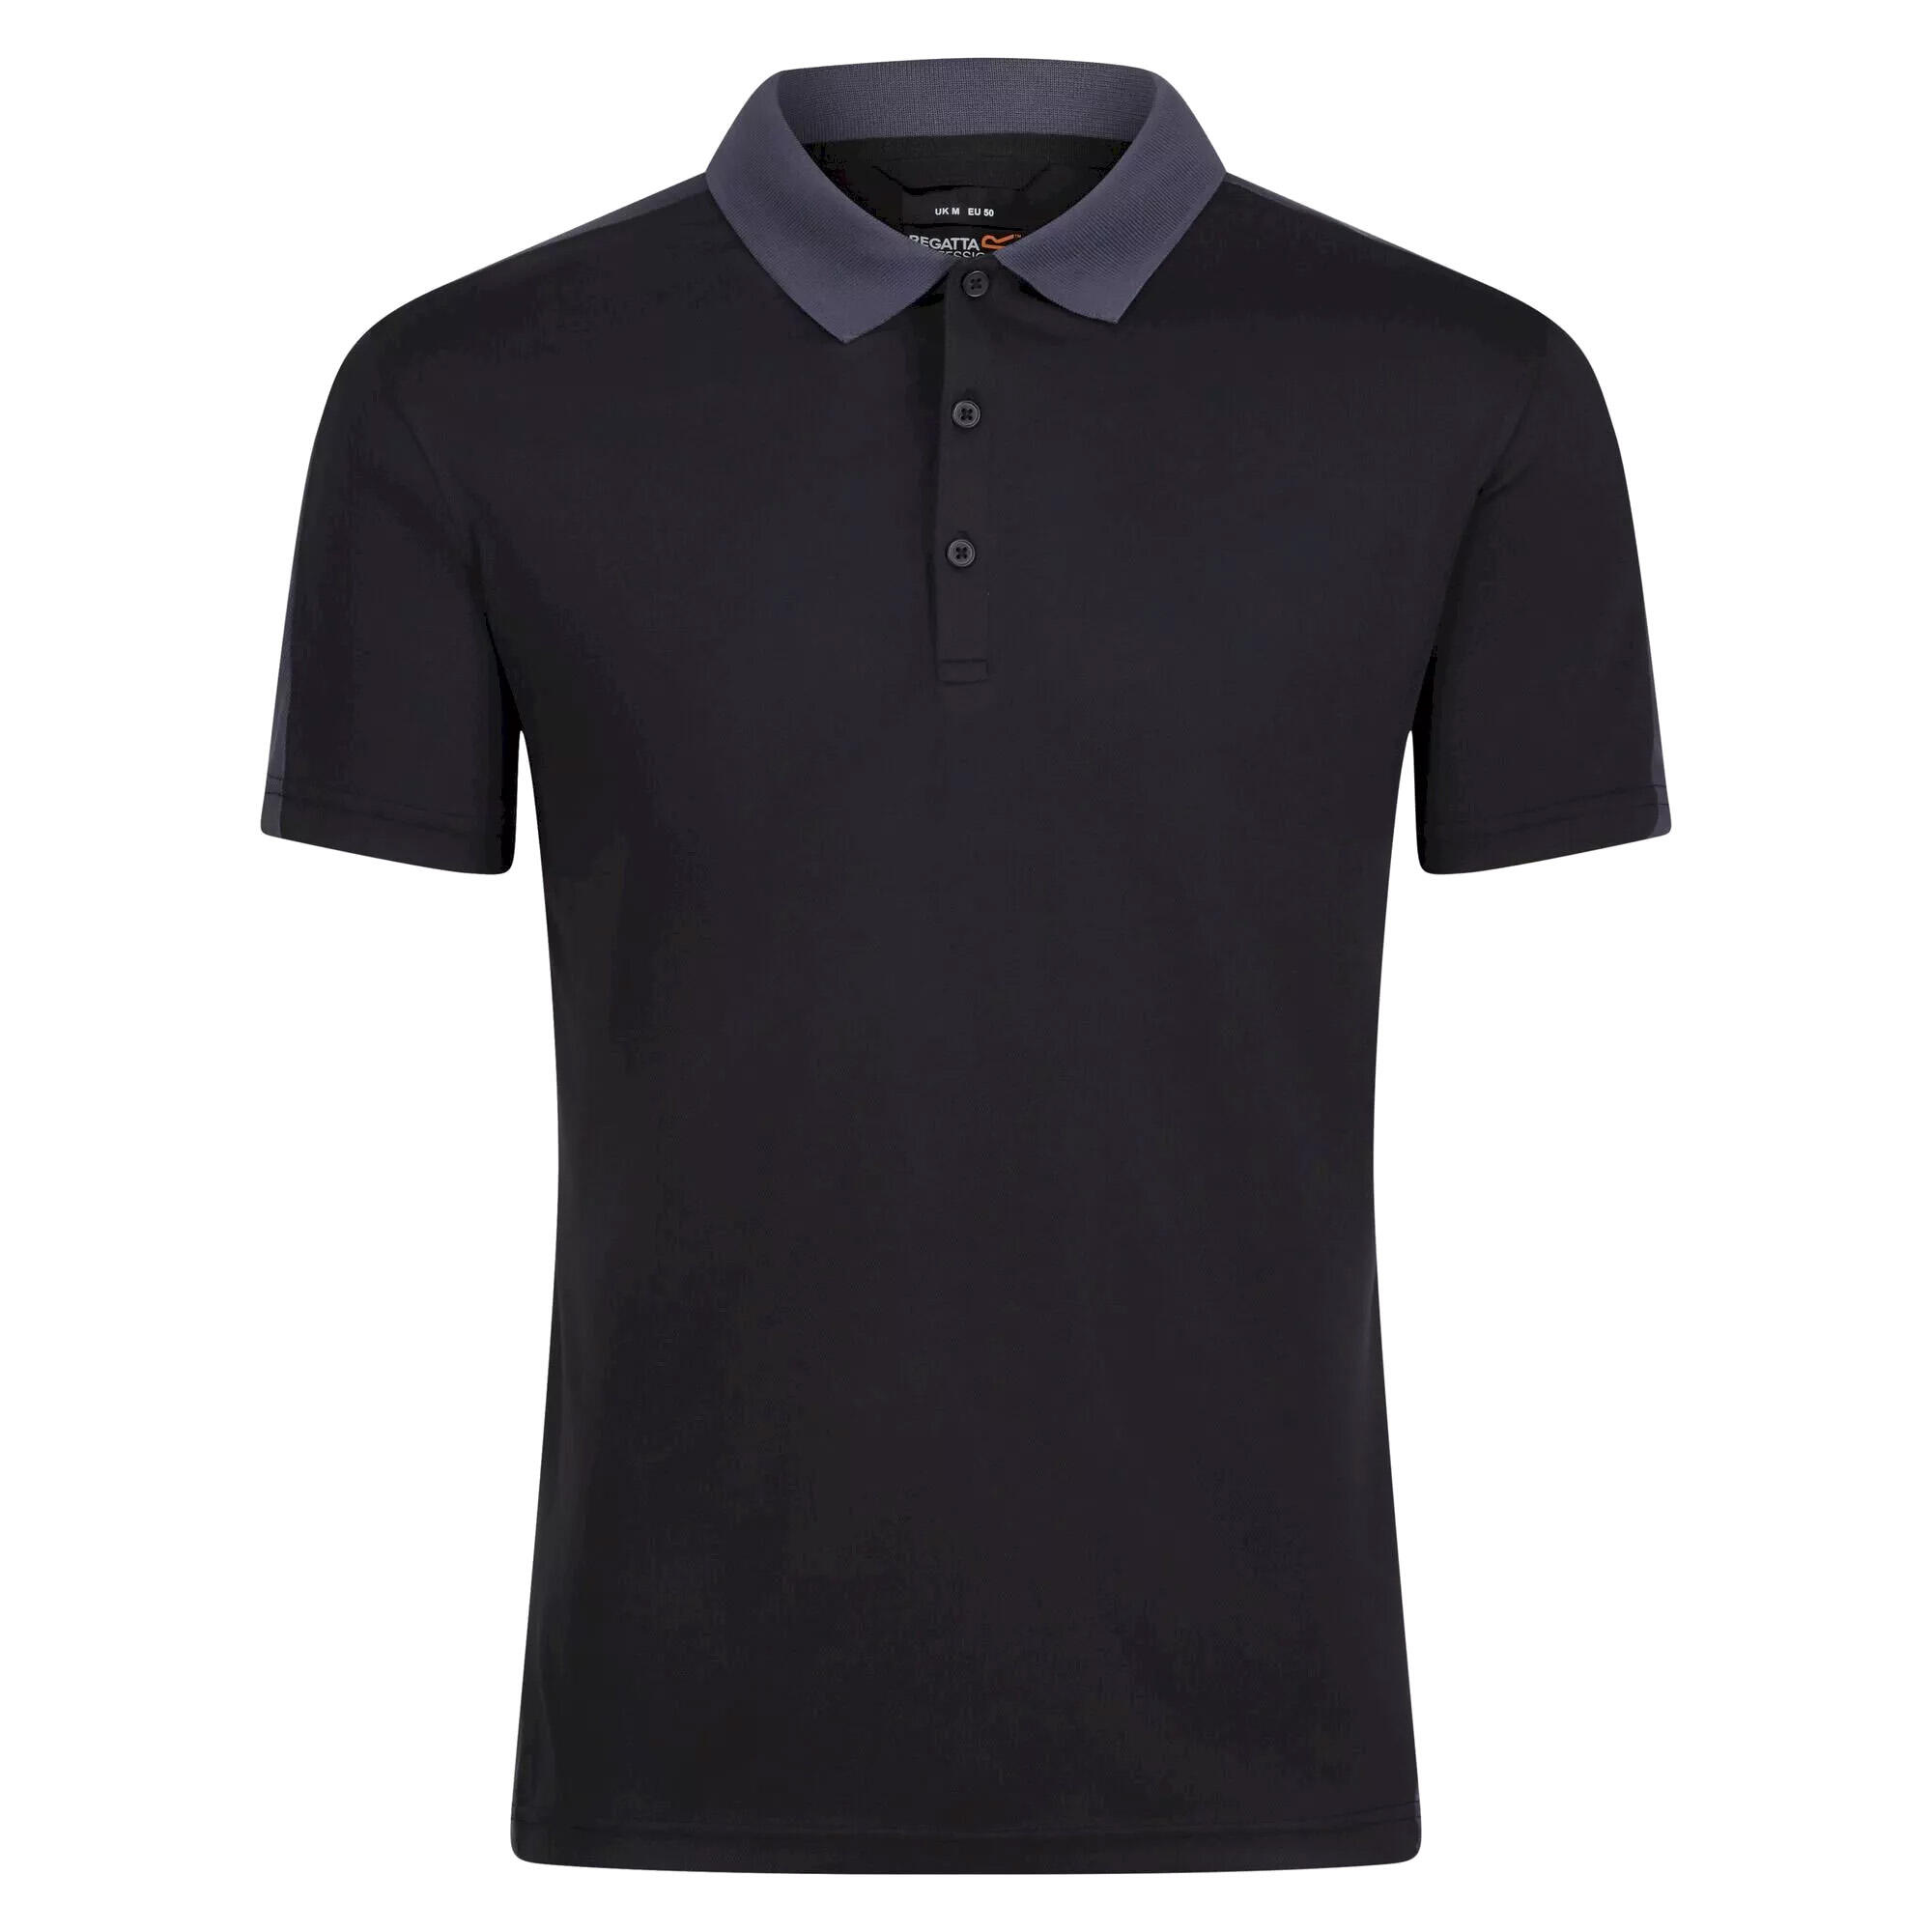 REGATTA Contrast Coolweave Pique Polo Shirt (Black/Seal Grey)